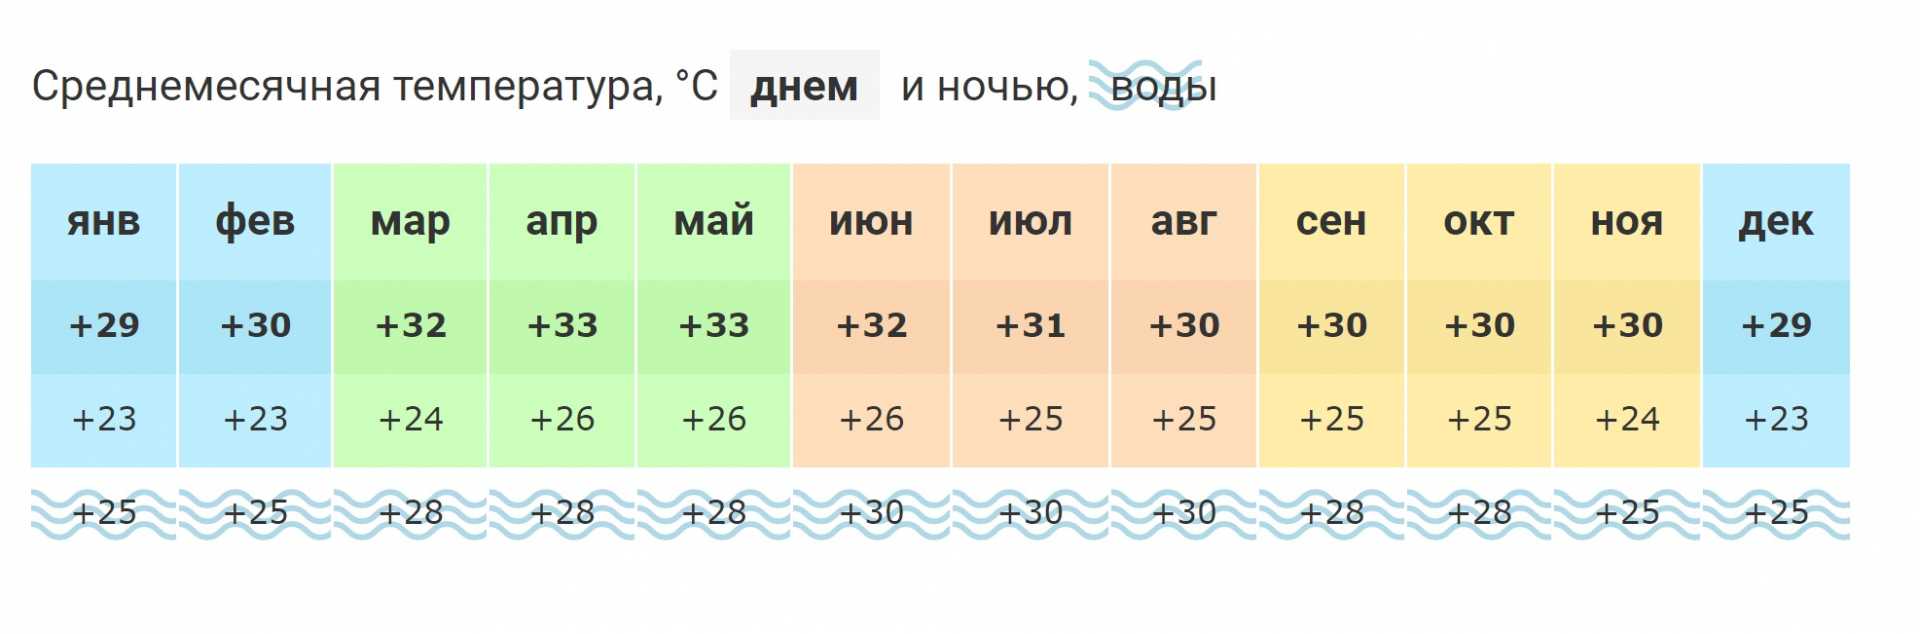 Хургада погода в мае и температура воды. Черногория климат по месяцам. Средняя температура в Черногории по месяцам. Температура в Черногории по месяцам и температура воды. Черногория температура по месяцам.